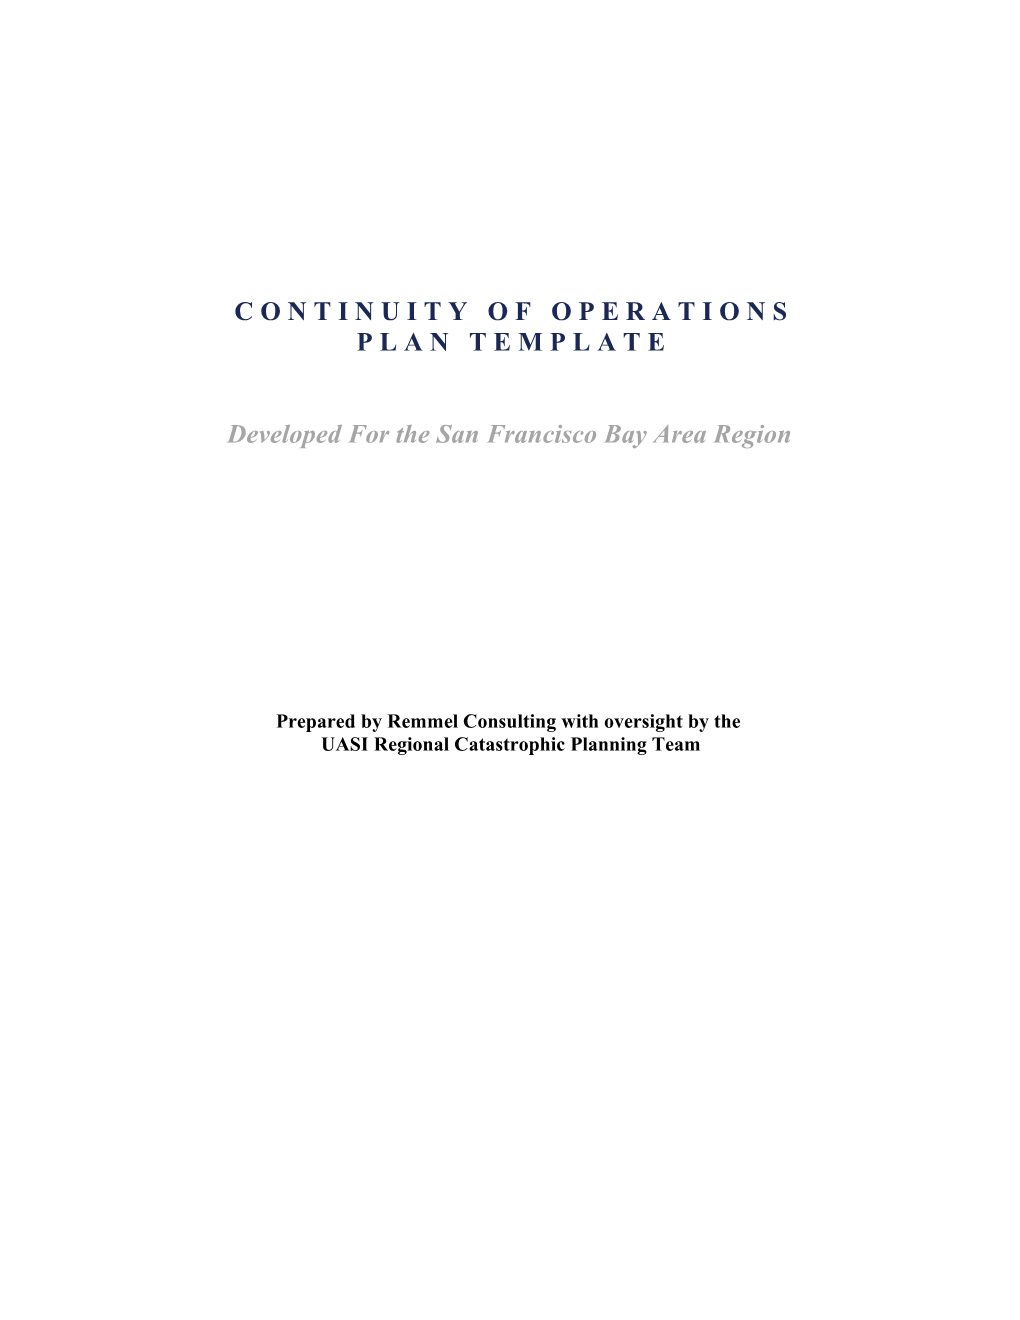 Continuity of Operations Planning Handbook